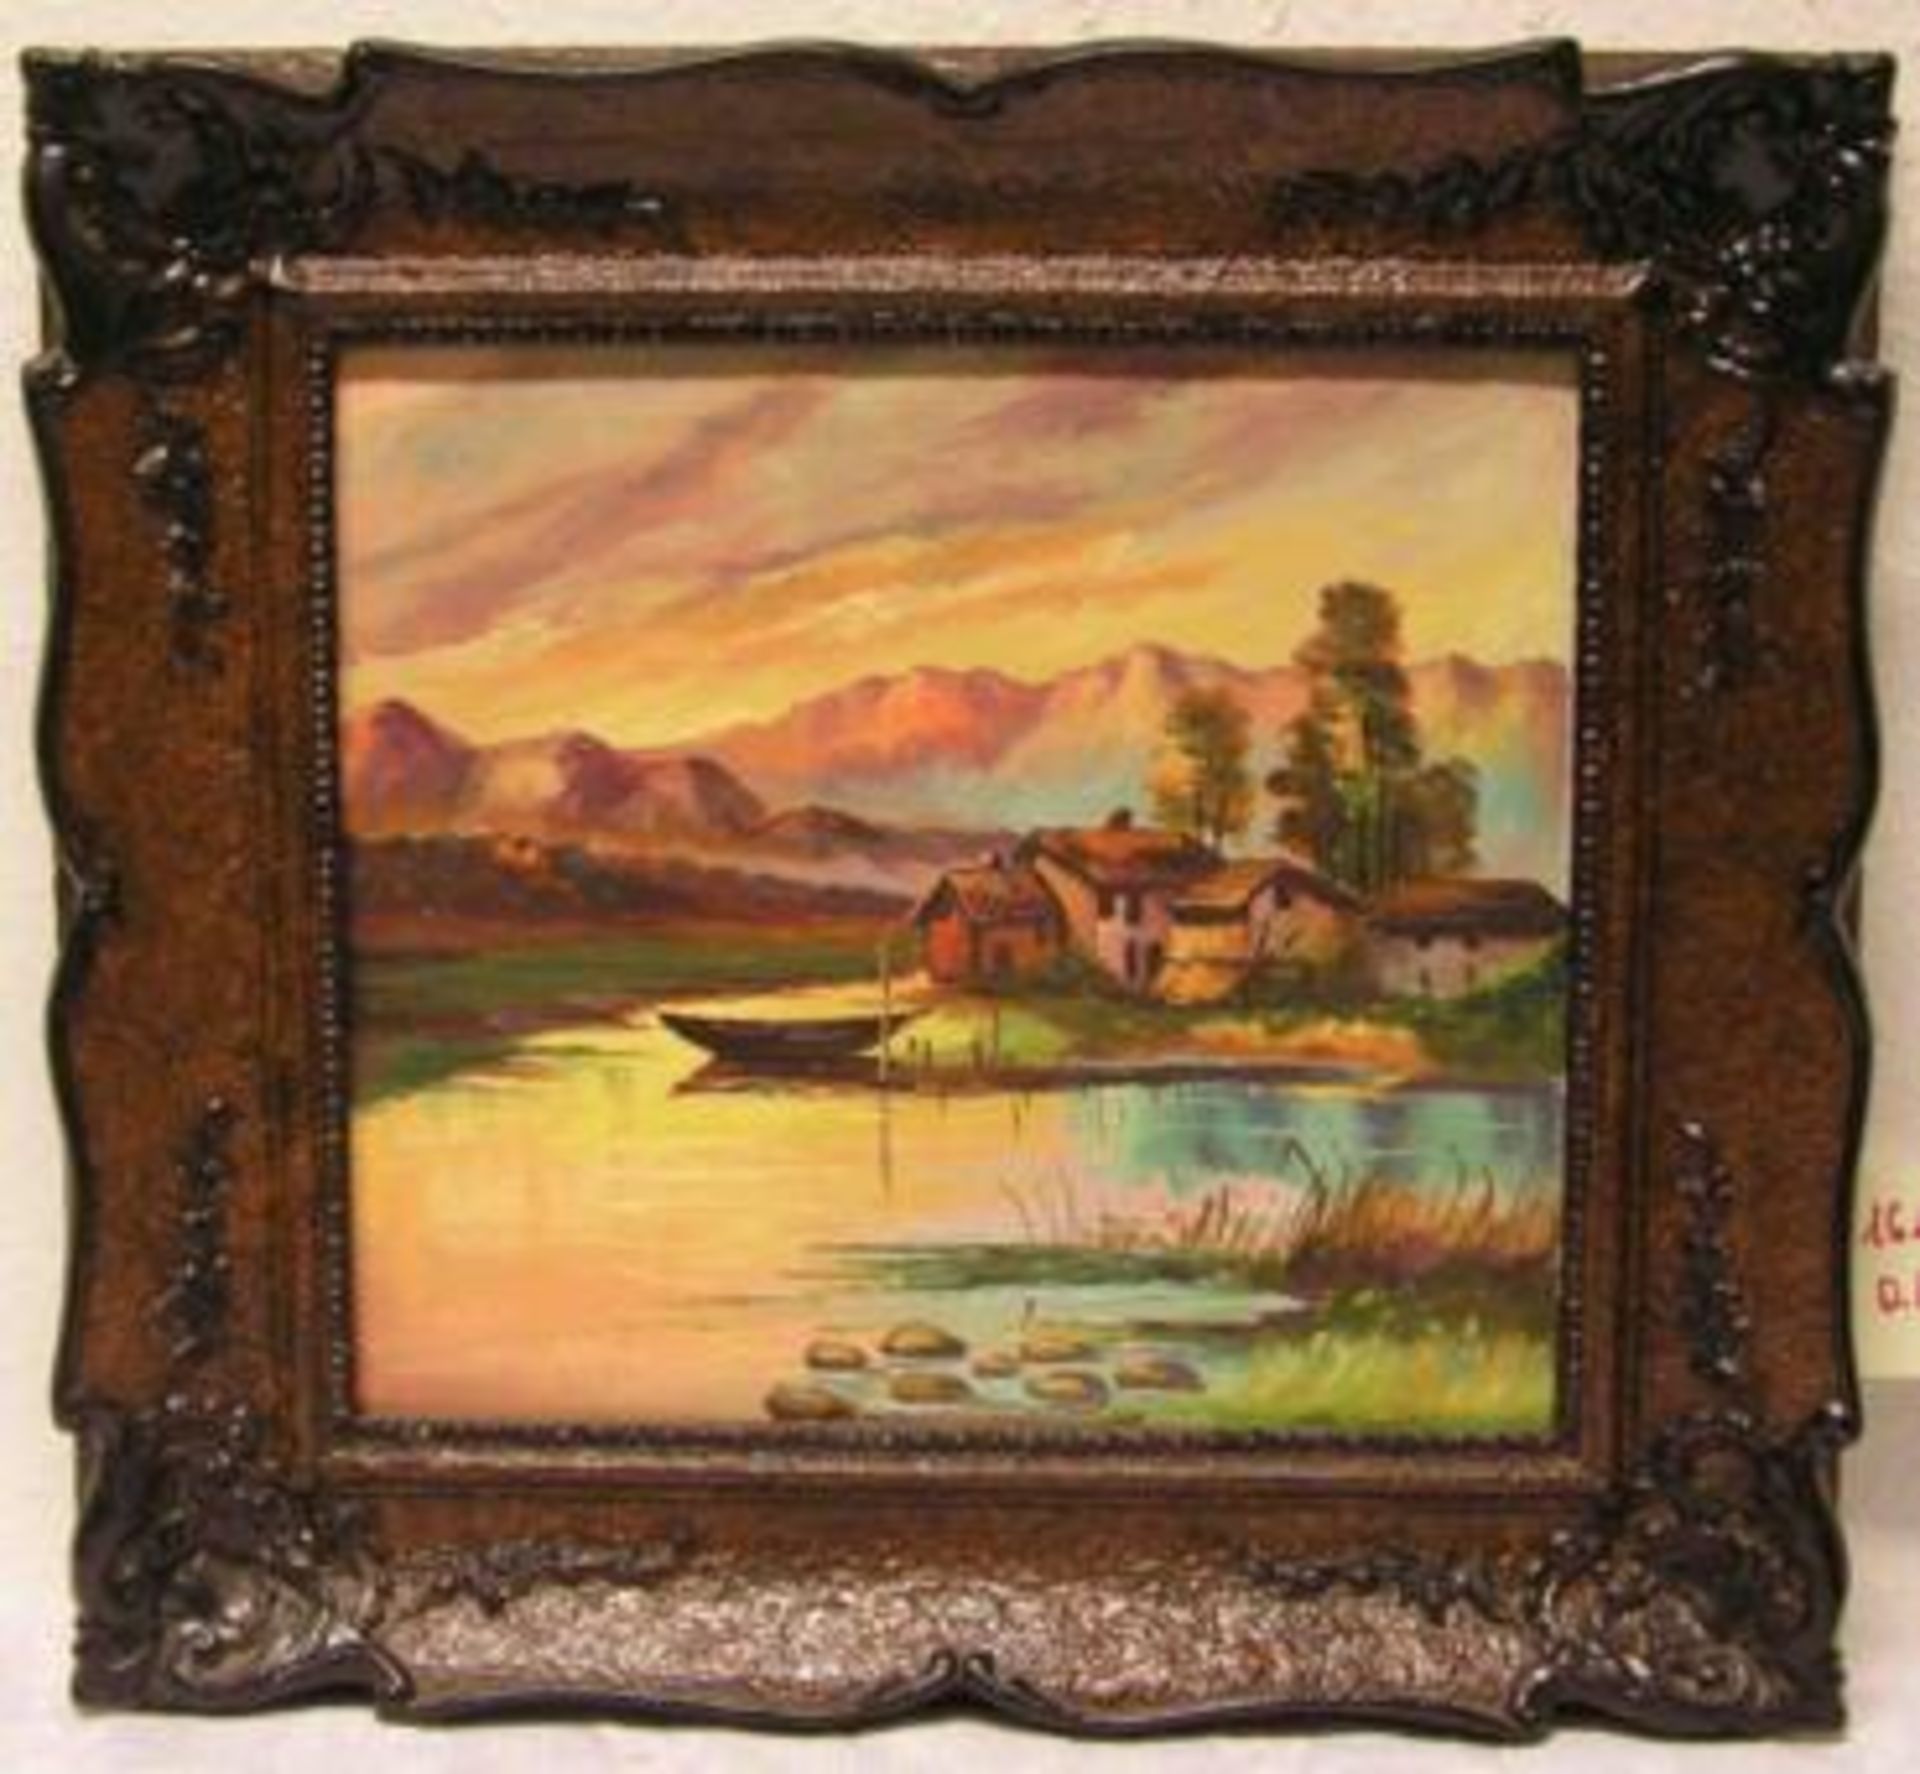 Stelzner, rumänischer Maler: "Dorf am Seeufer". Öl/Lwd., signiert, 38 x 42cm. Rahmen.